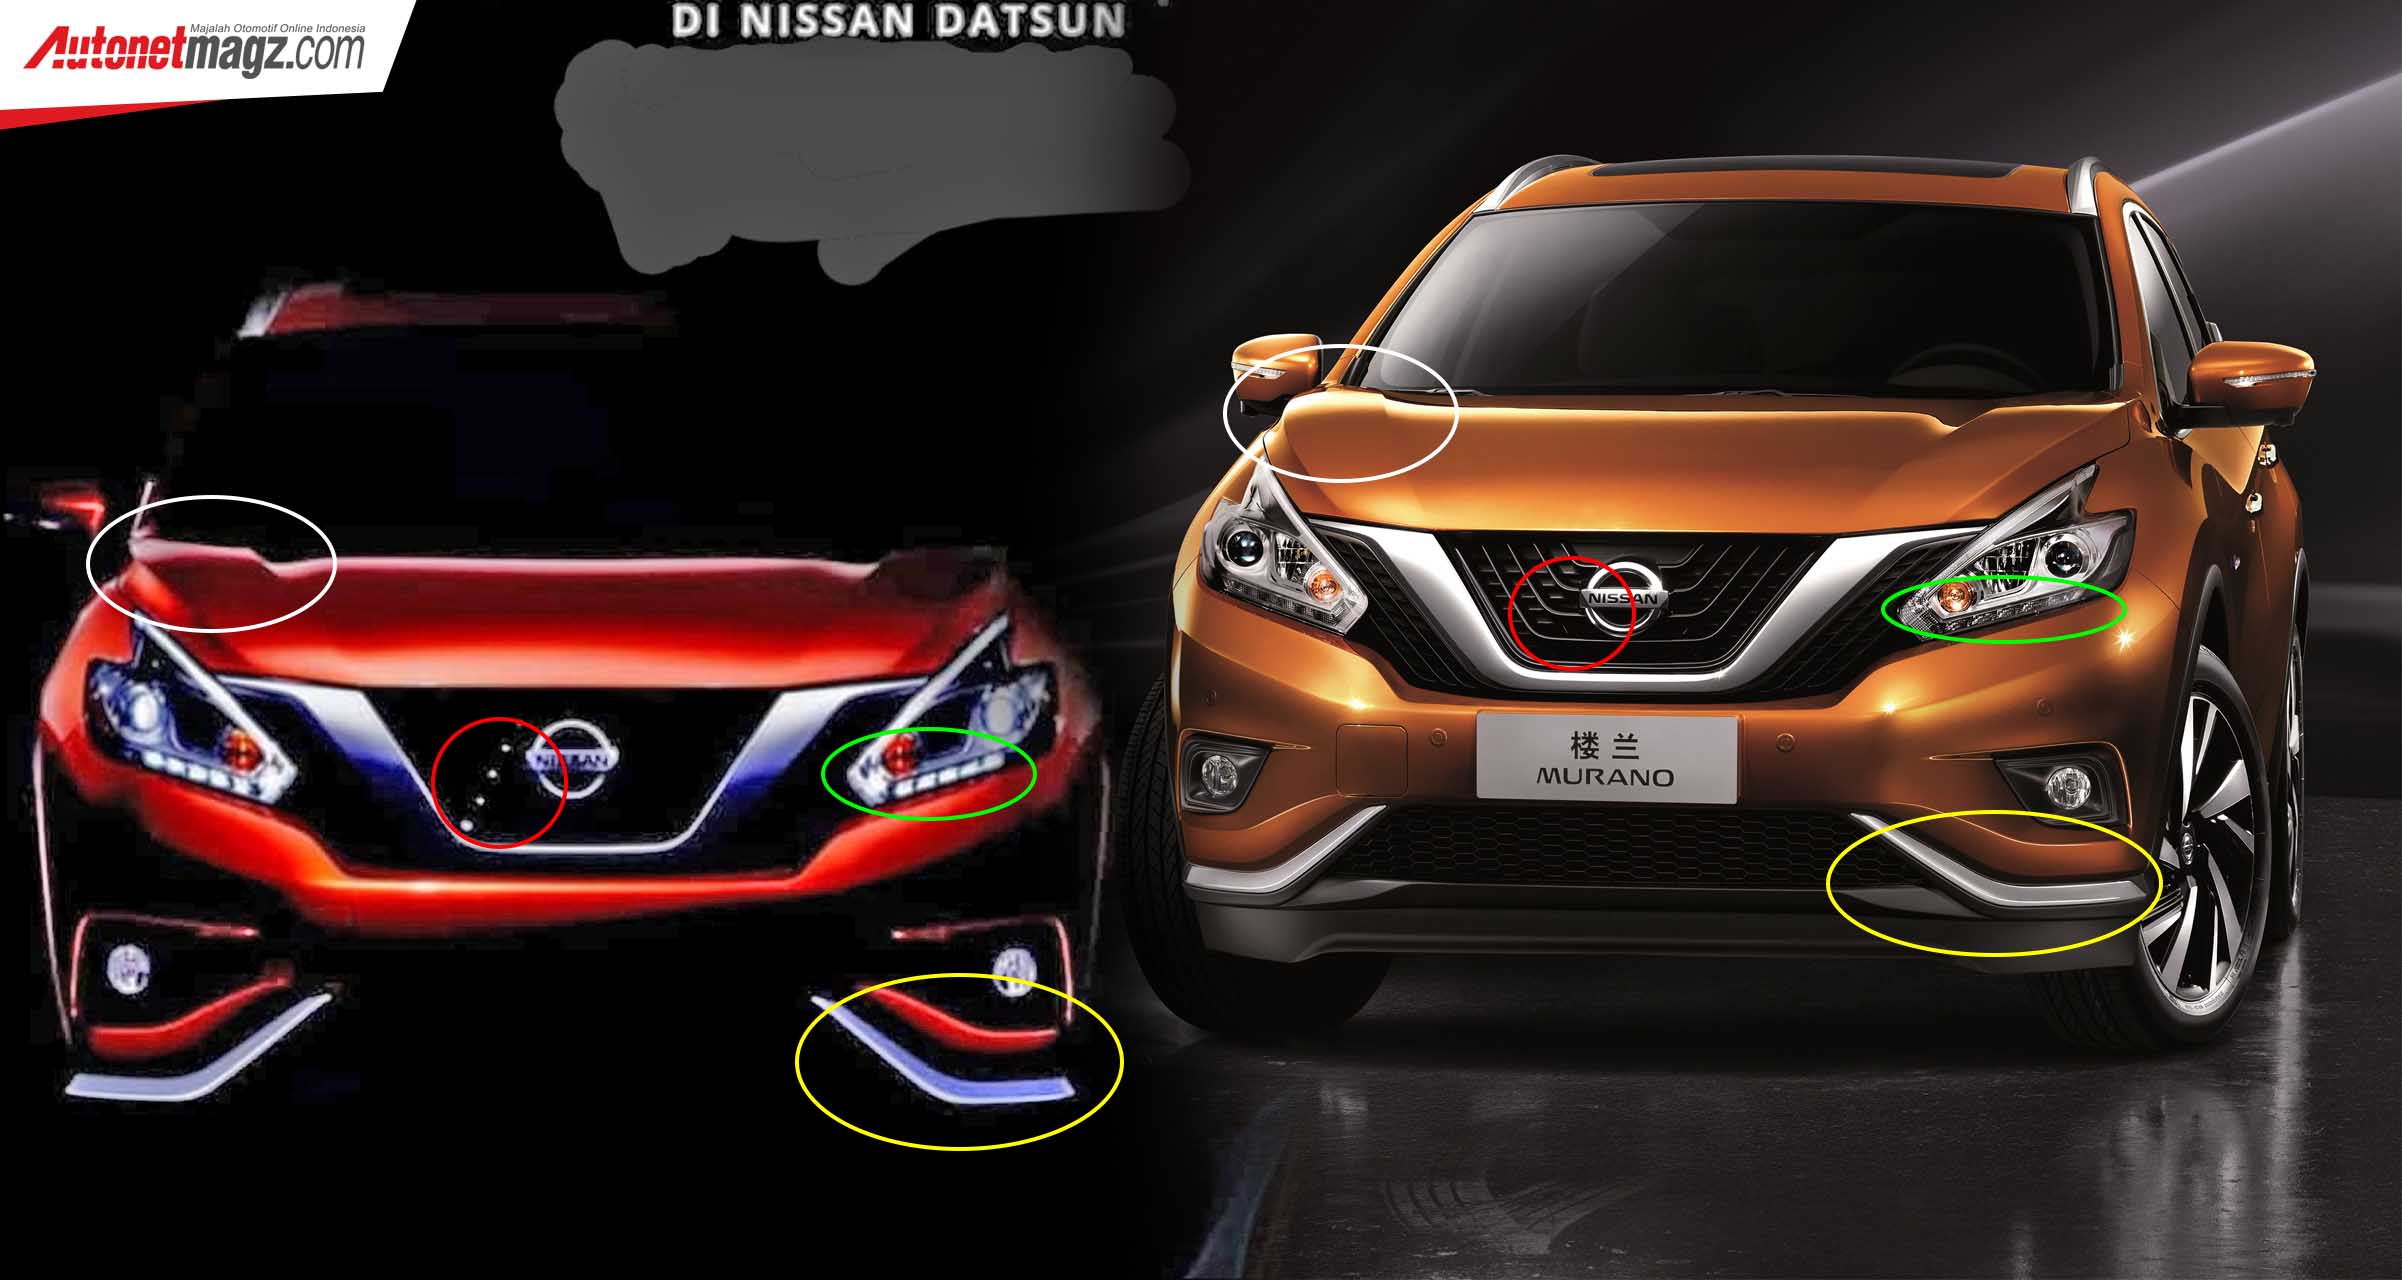 Berita, Bukti: Inikah Nissan Livina Baru Yang Menjemput Konsumen di Awal 2019?